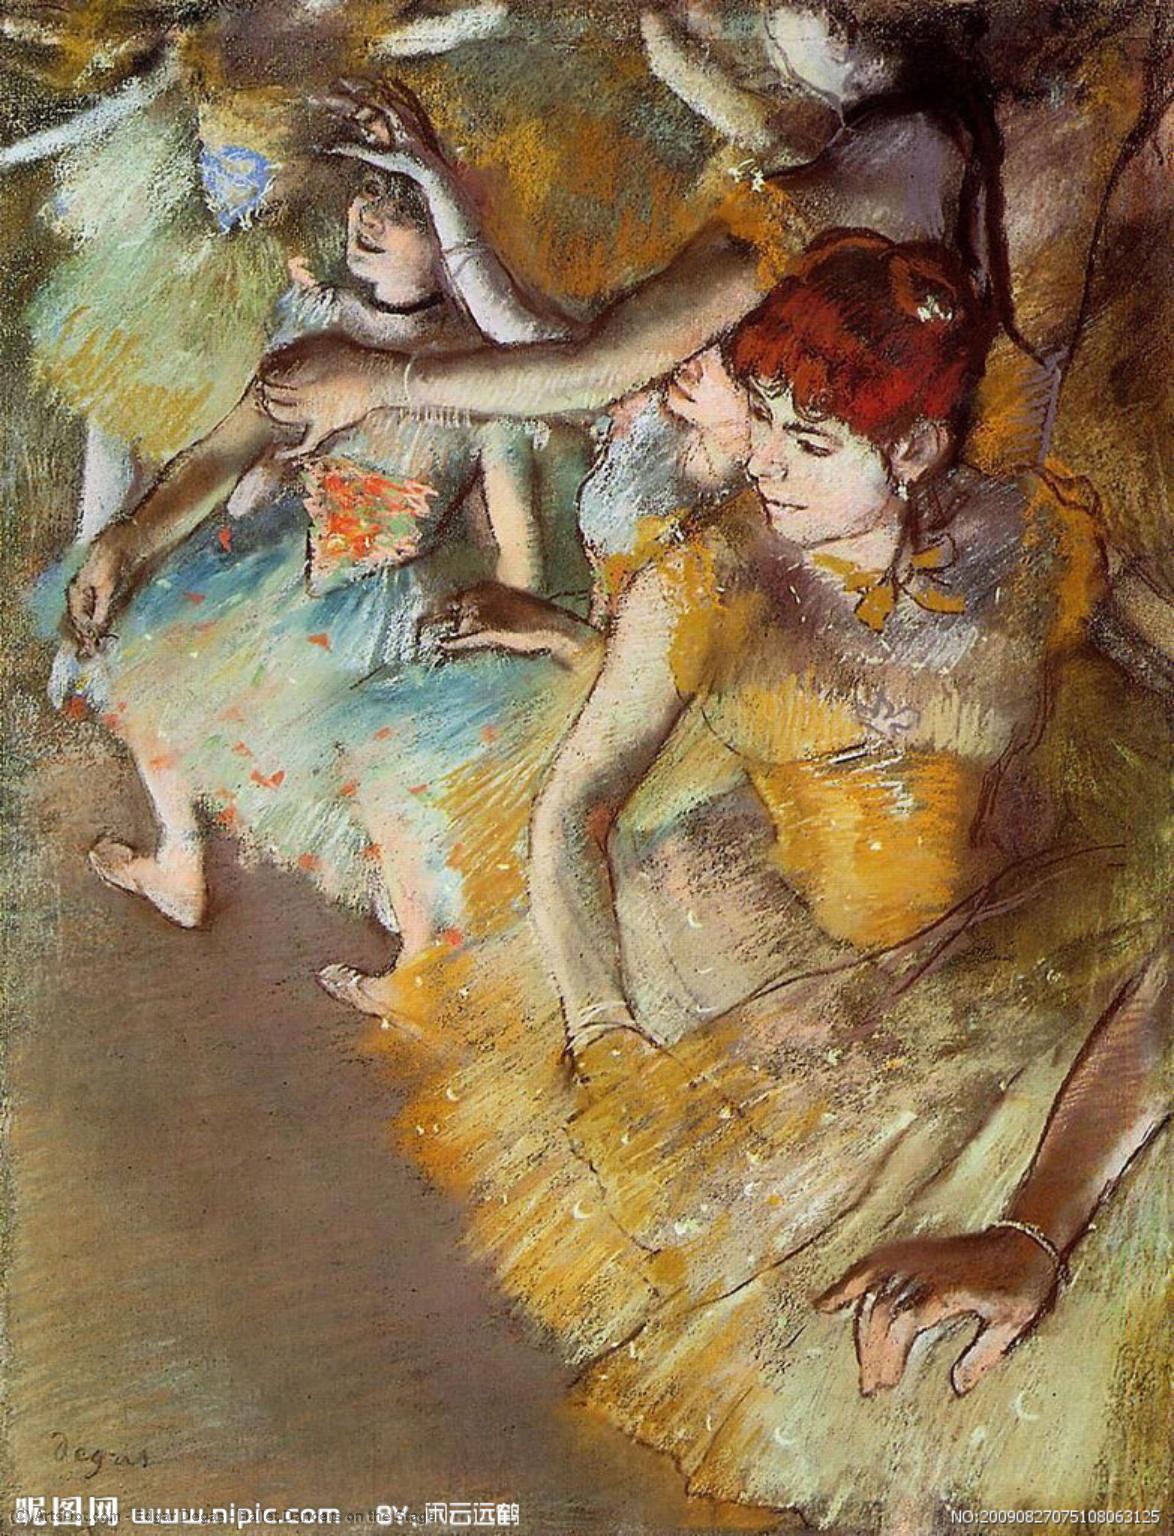 WikiOO.org - אנציקלופדיה לאמנויות יפות - ציור, יצירות אמנות Edgar Degas - Ballet Dancers on the Stage